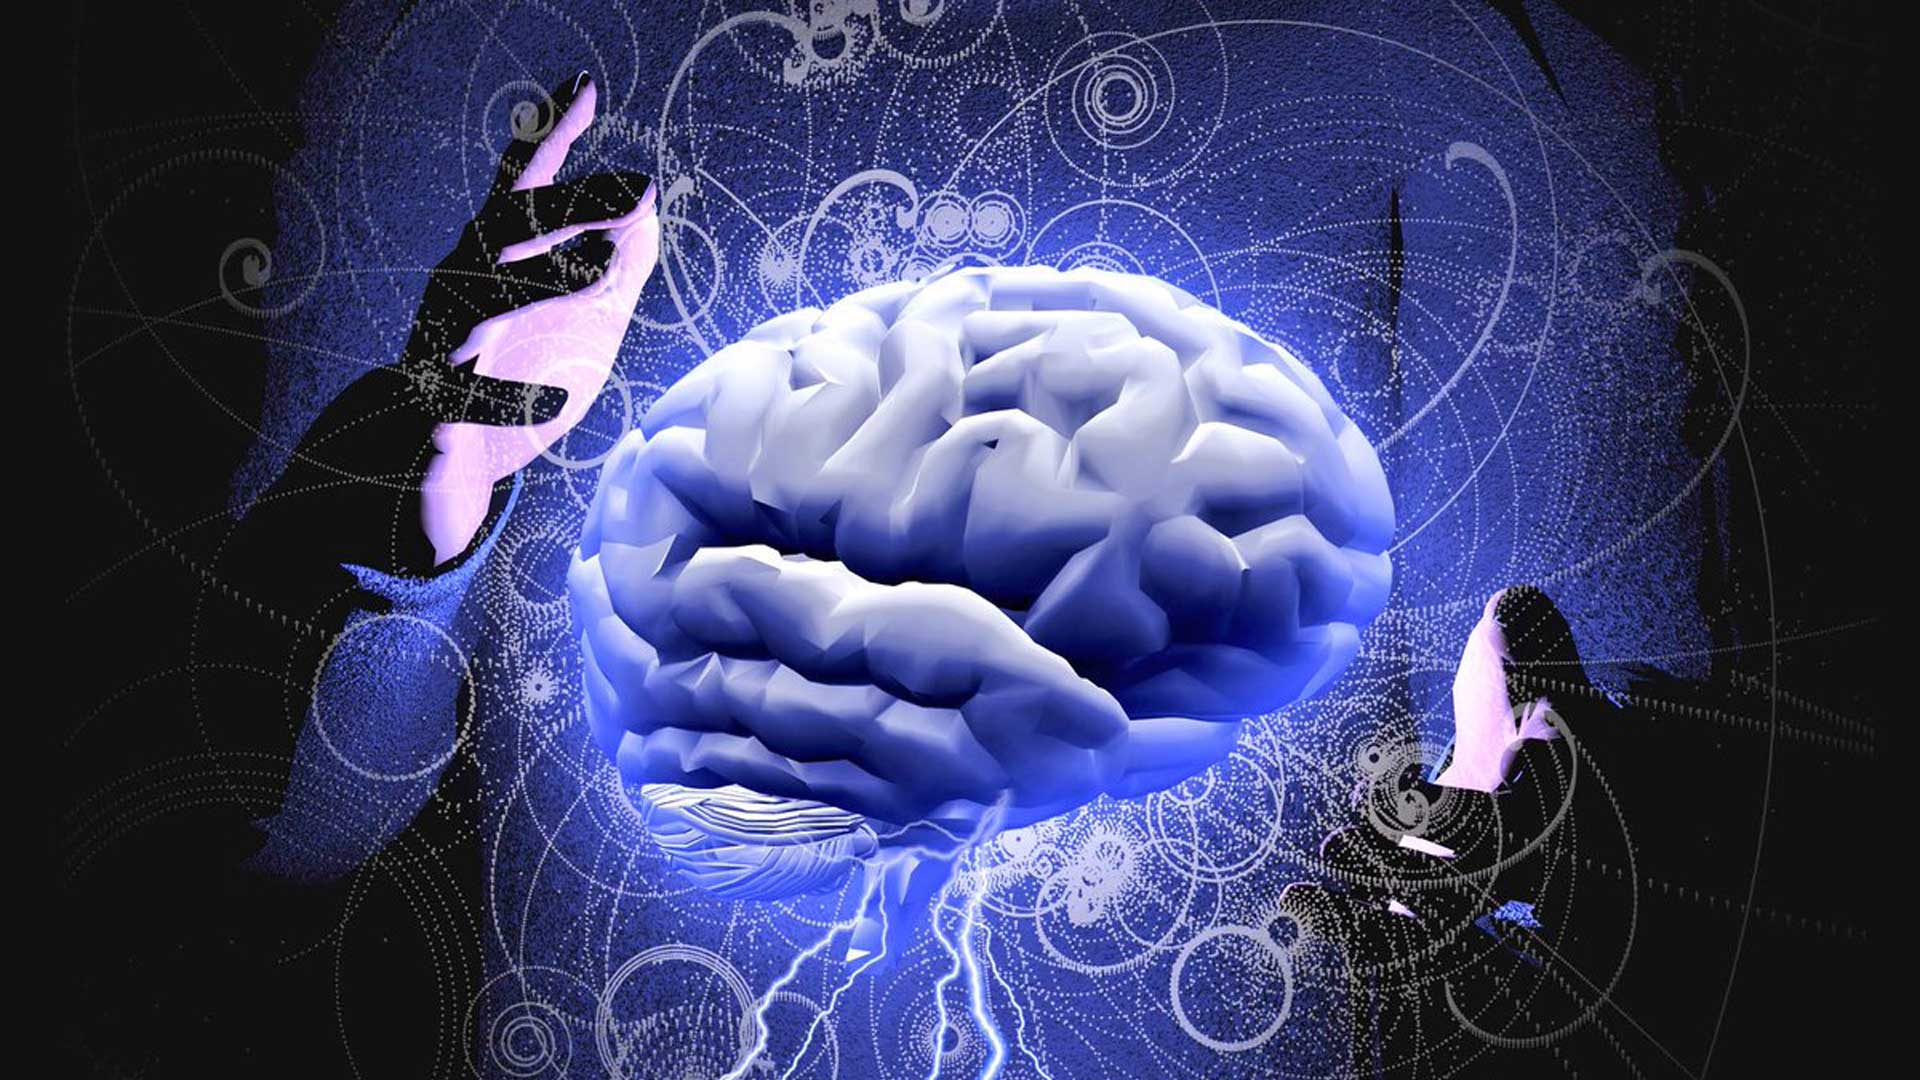 Ο εγκέφαλός μας μπορεί να αναπτύξει νέους νευρώνες και άνω των 80